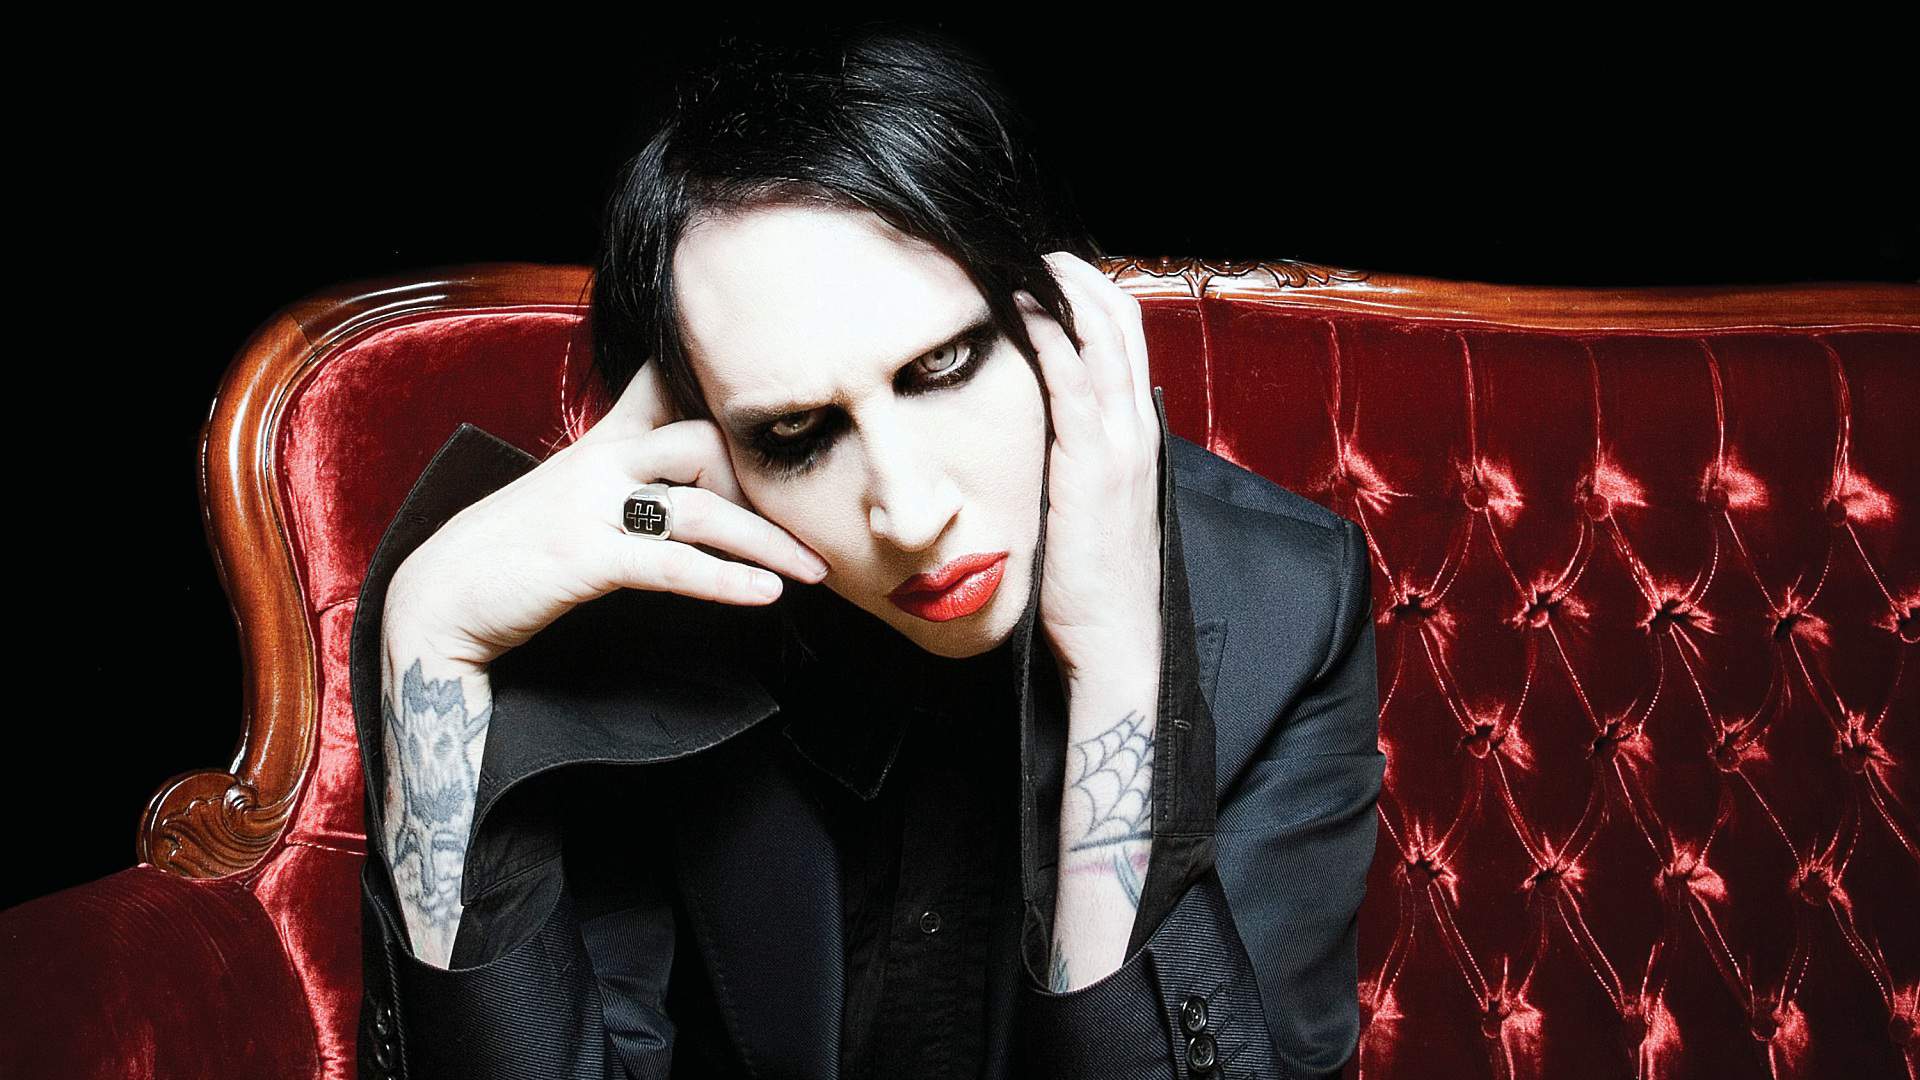 Concerto Marilyn Manson Torino 2017: scaletta, orari e come arrivare